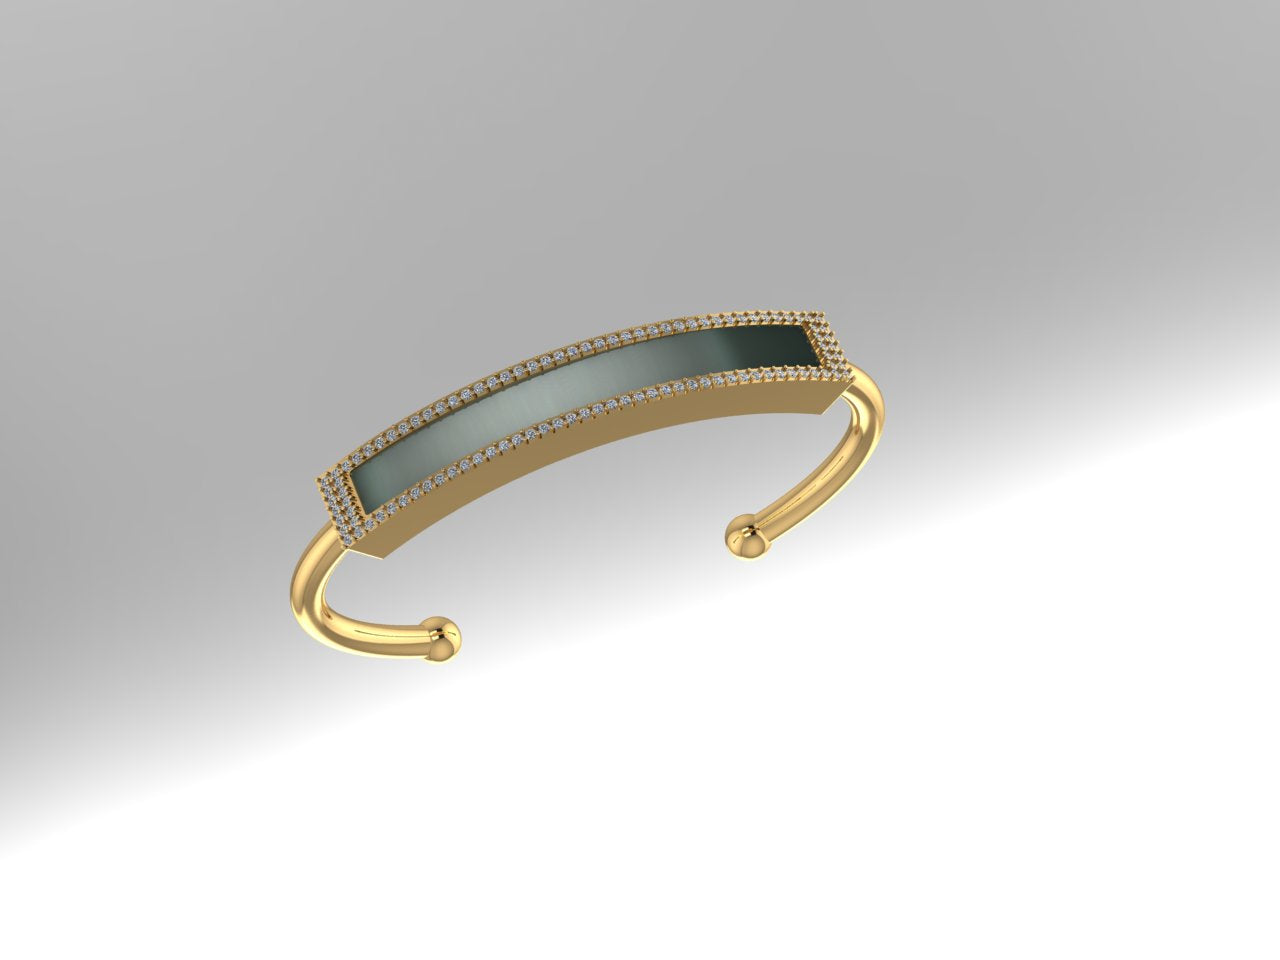 Personalized Nameplate Diamond Bangle Bracelet | Customized Engraving